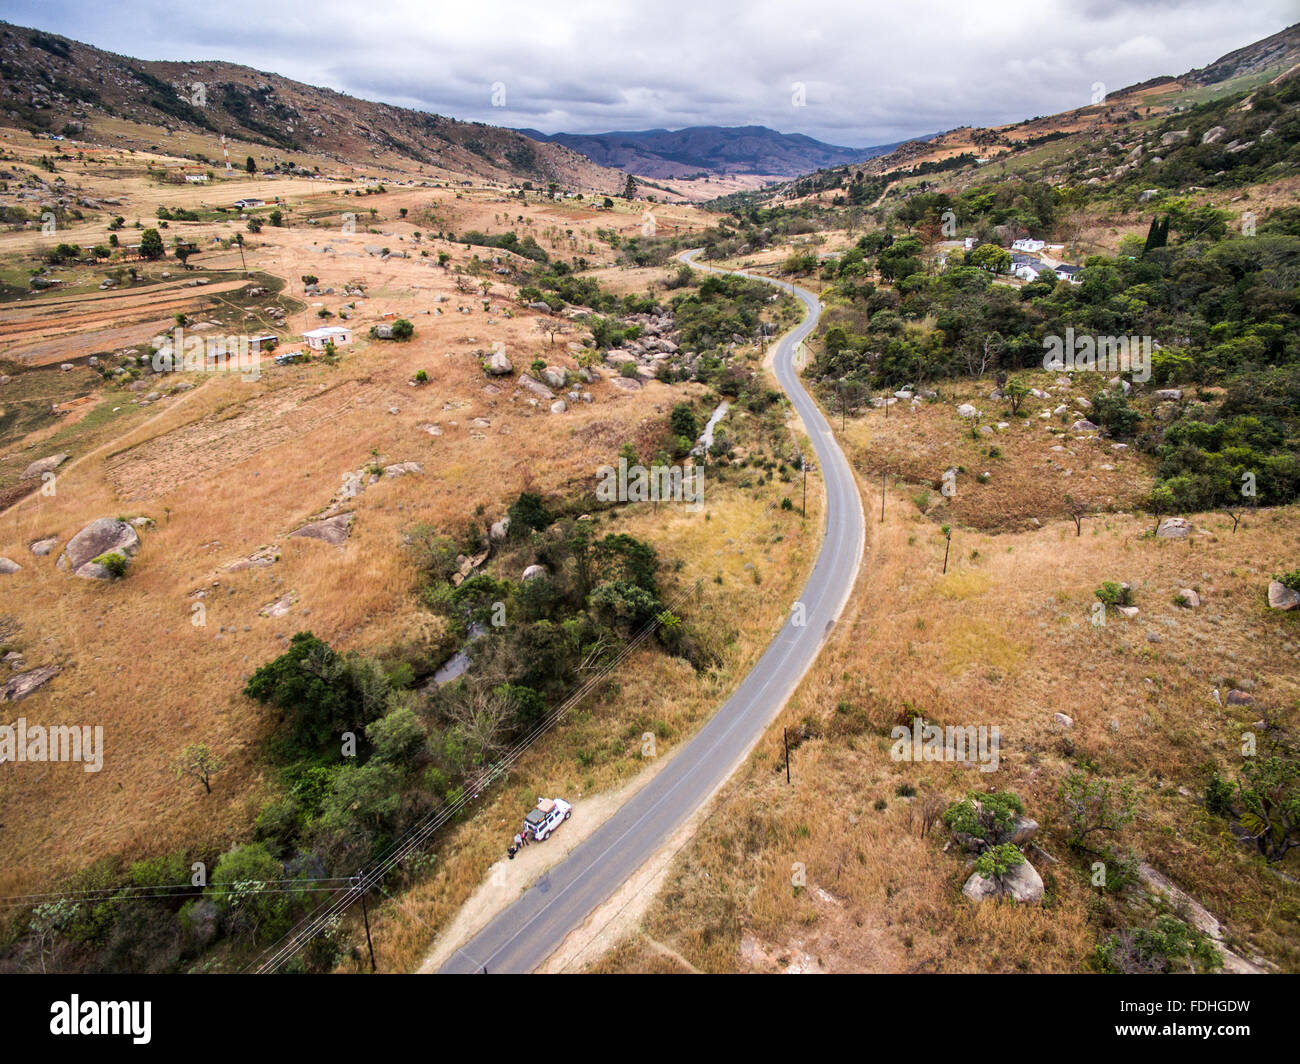 Paysage de la région de Hhohho au Swaziland, l'Afrique Banque D'Images